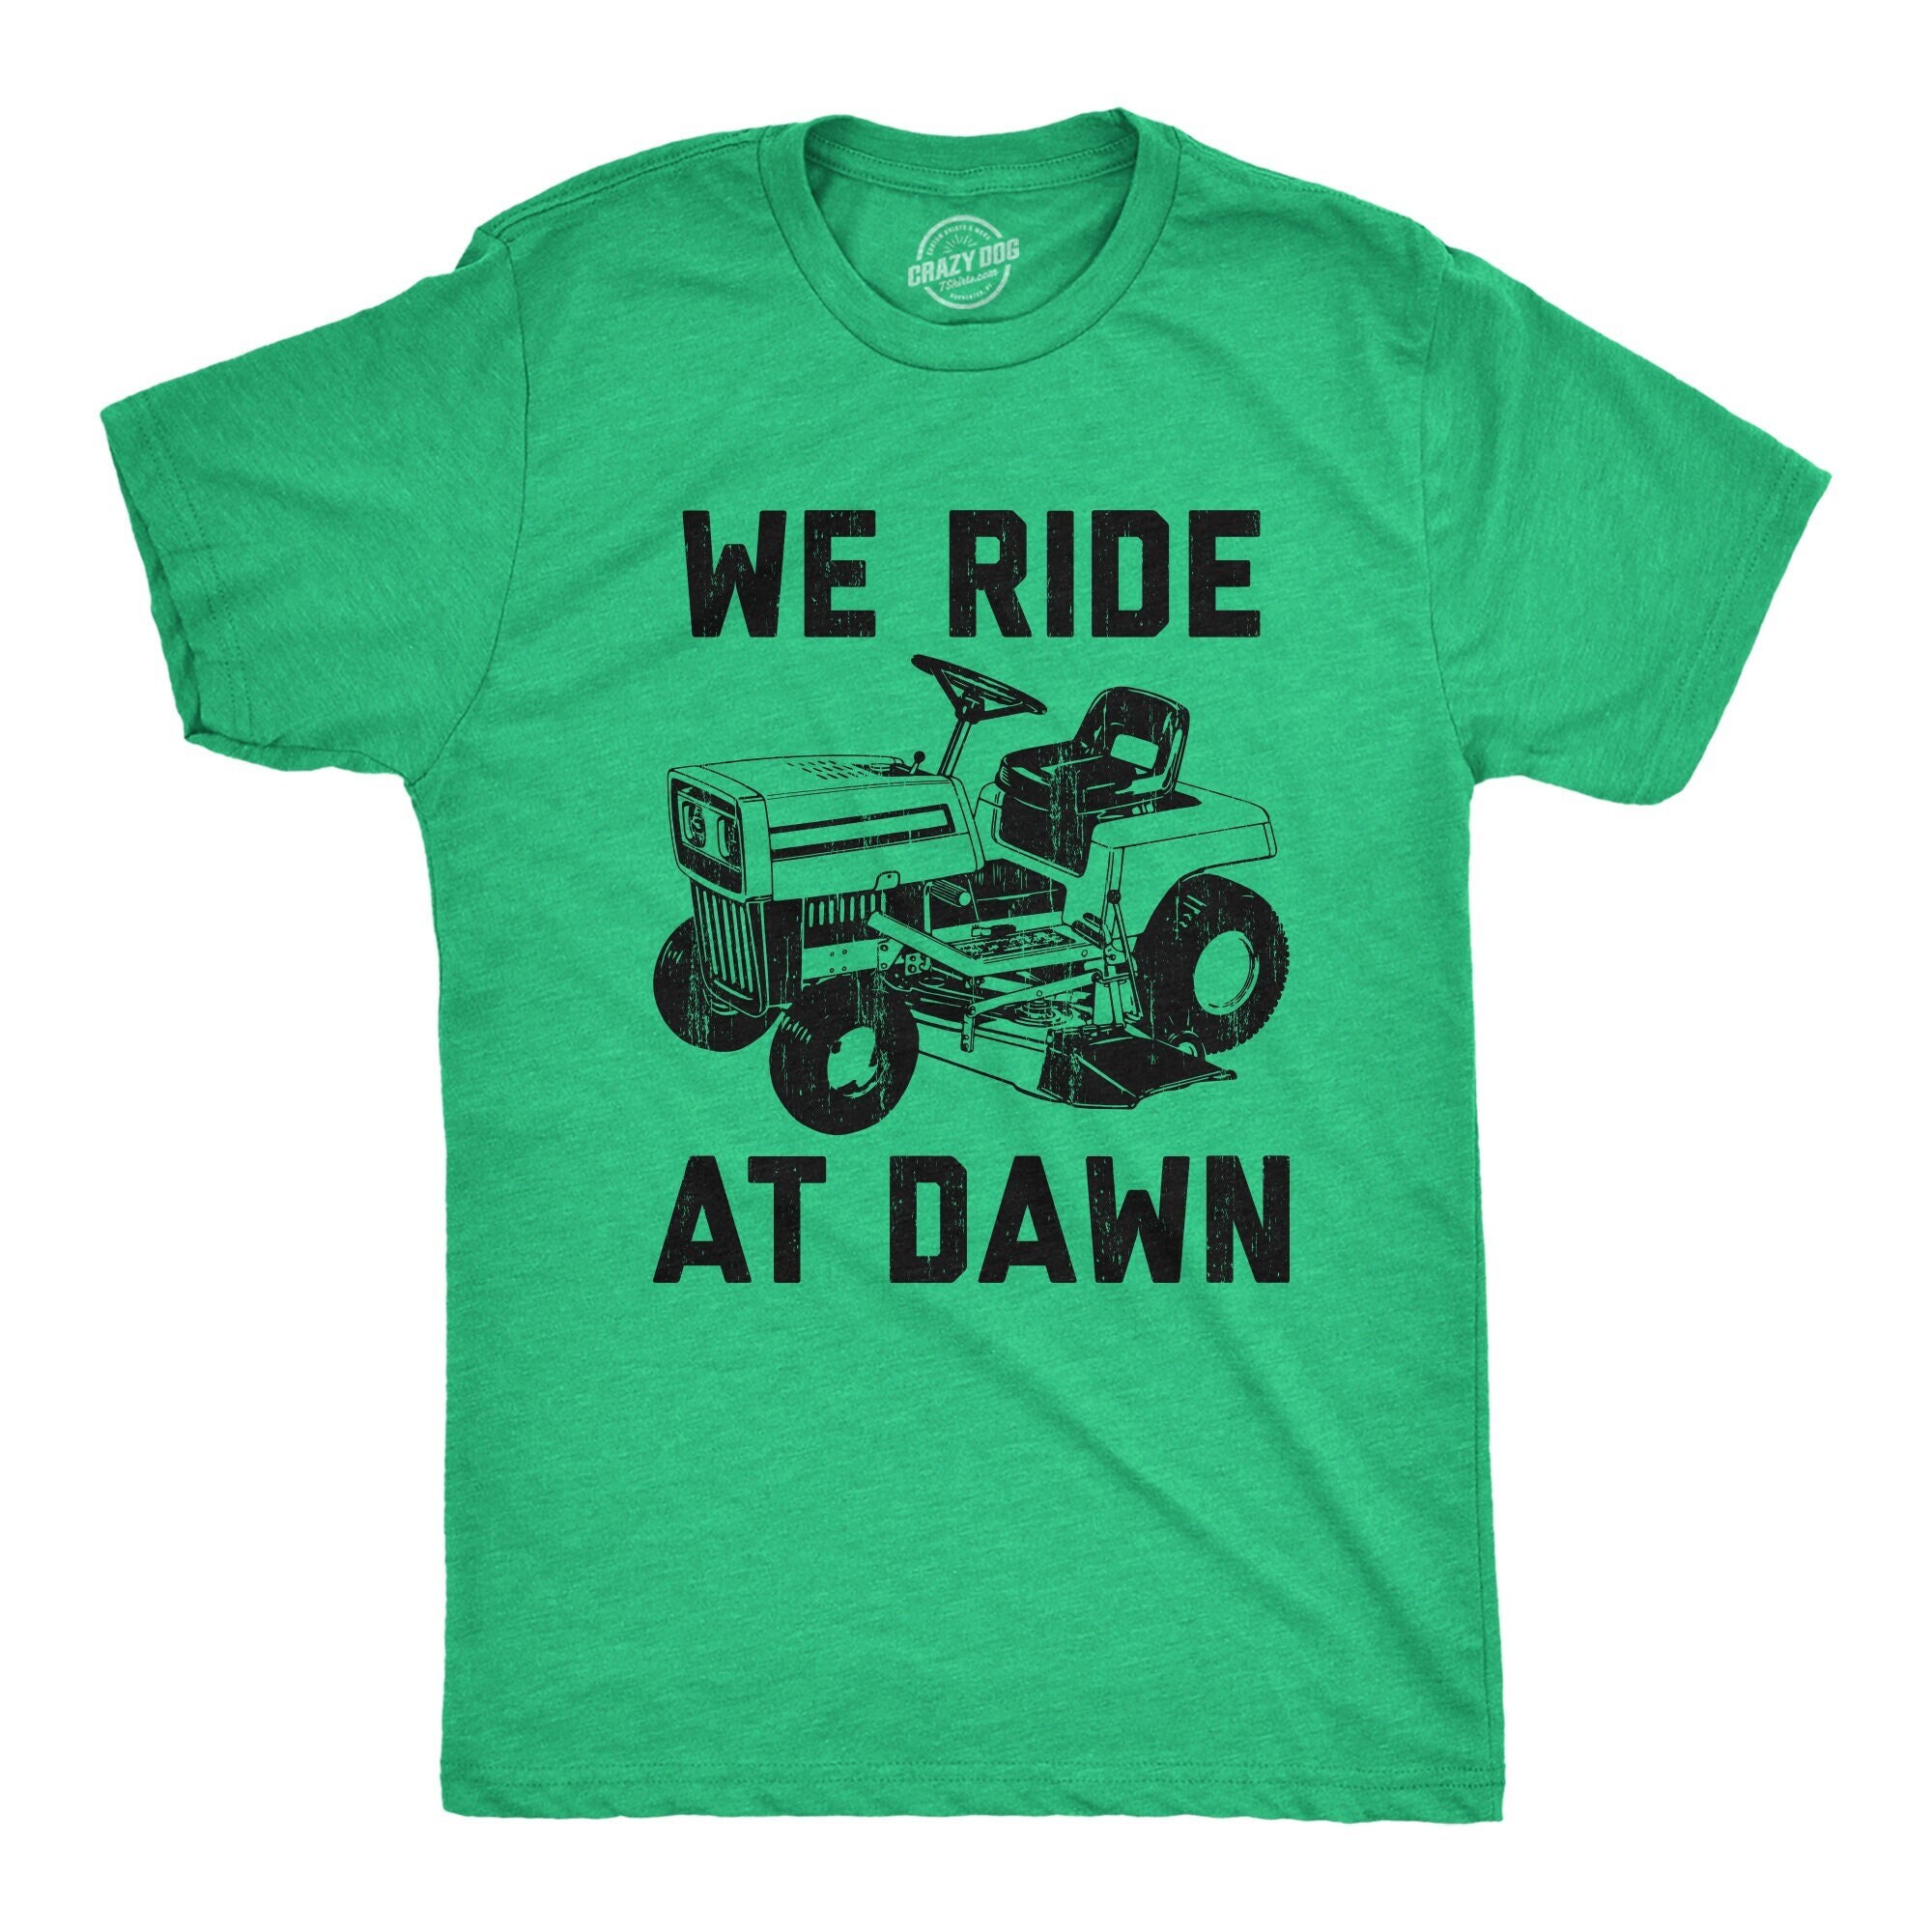 Ride dawn shirt for sale  